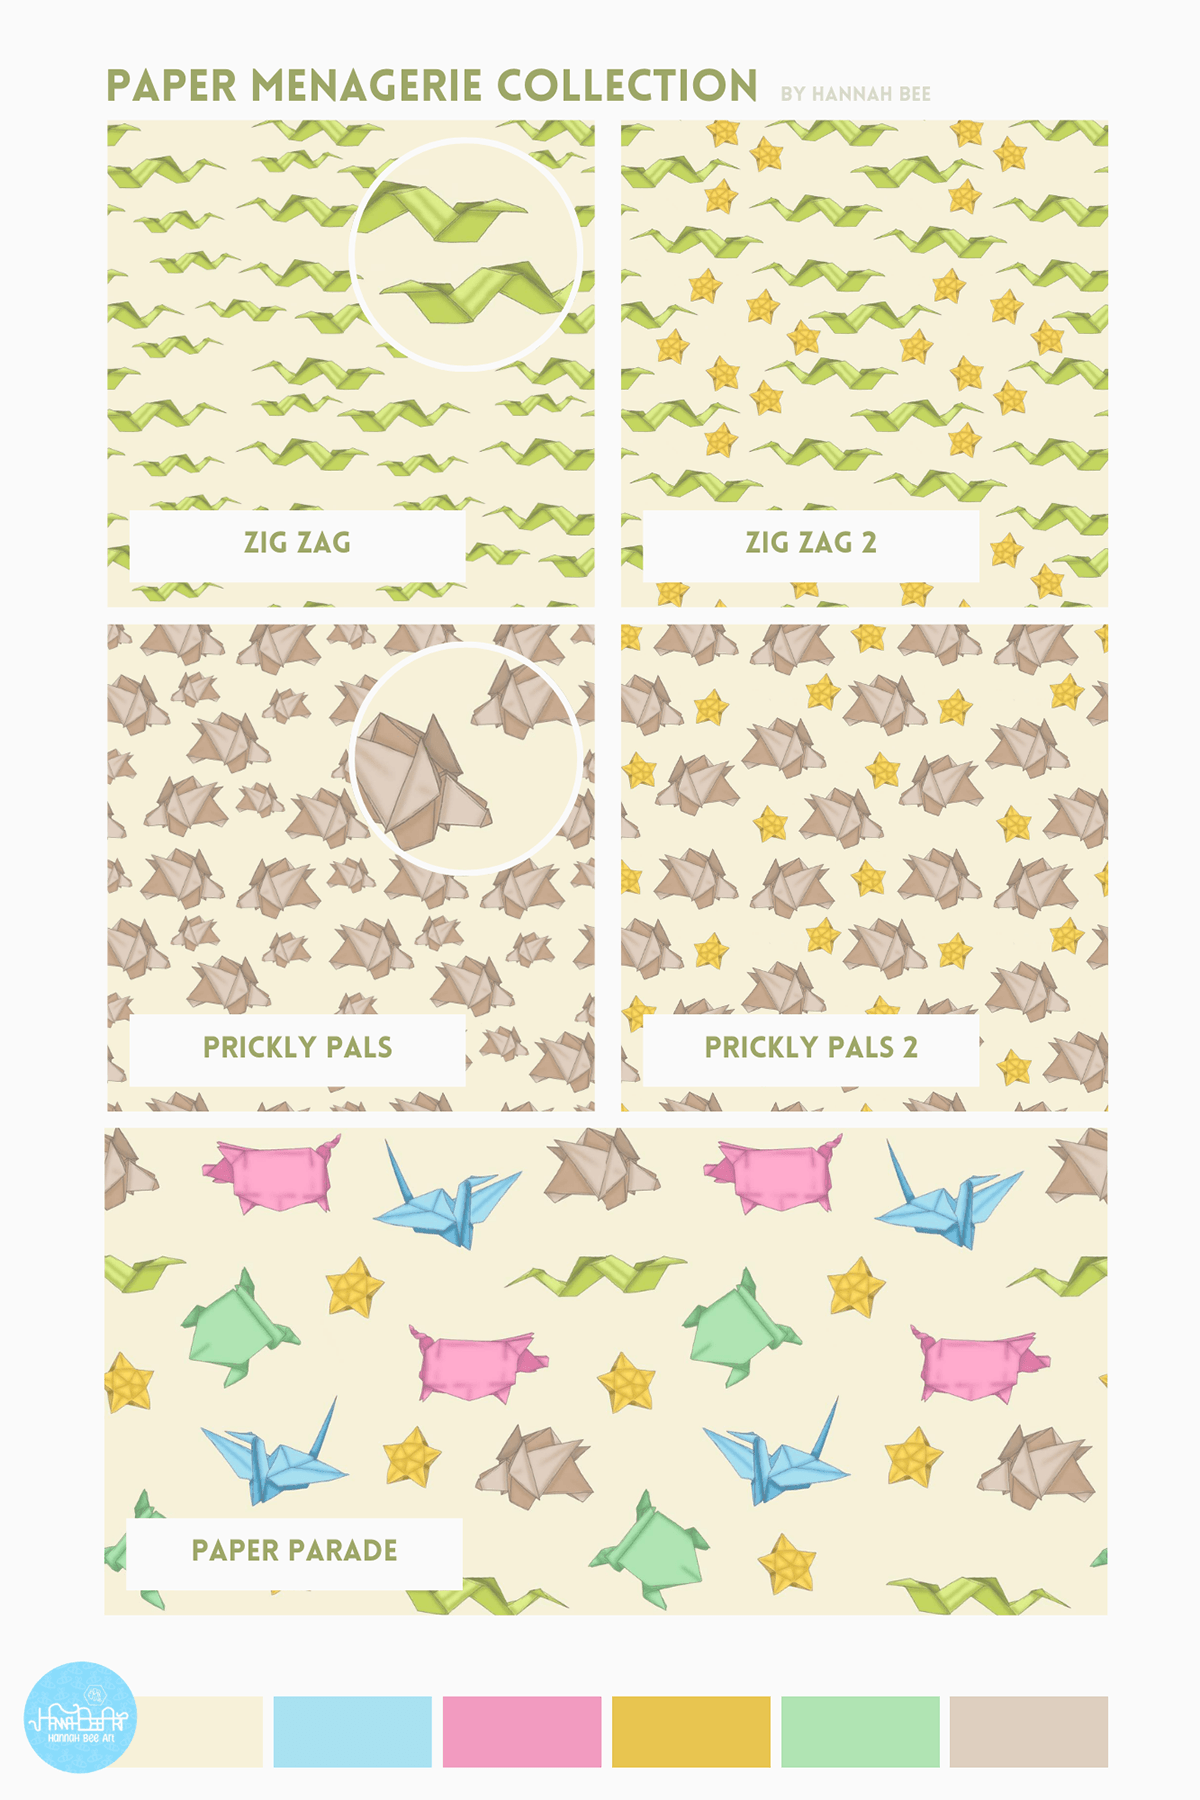 Surface Pattern art licensing mockups ILLUSTRATION  design textile floral Nature floral pattern #pattern design